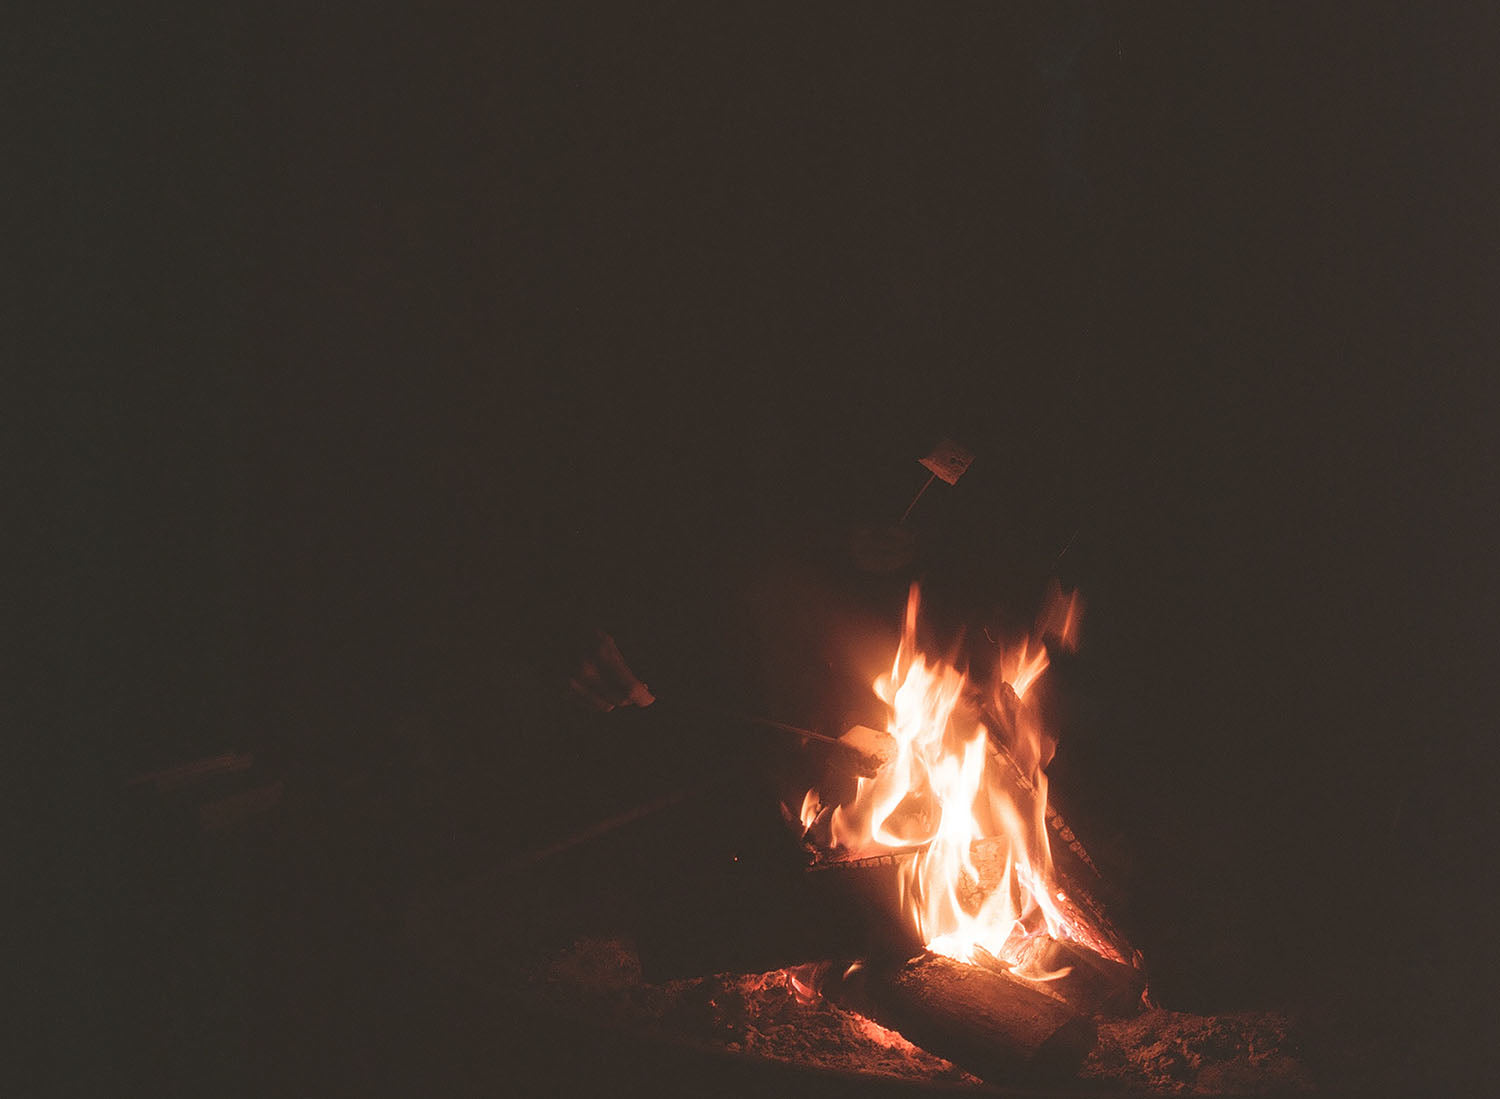 smores around the campfire